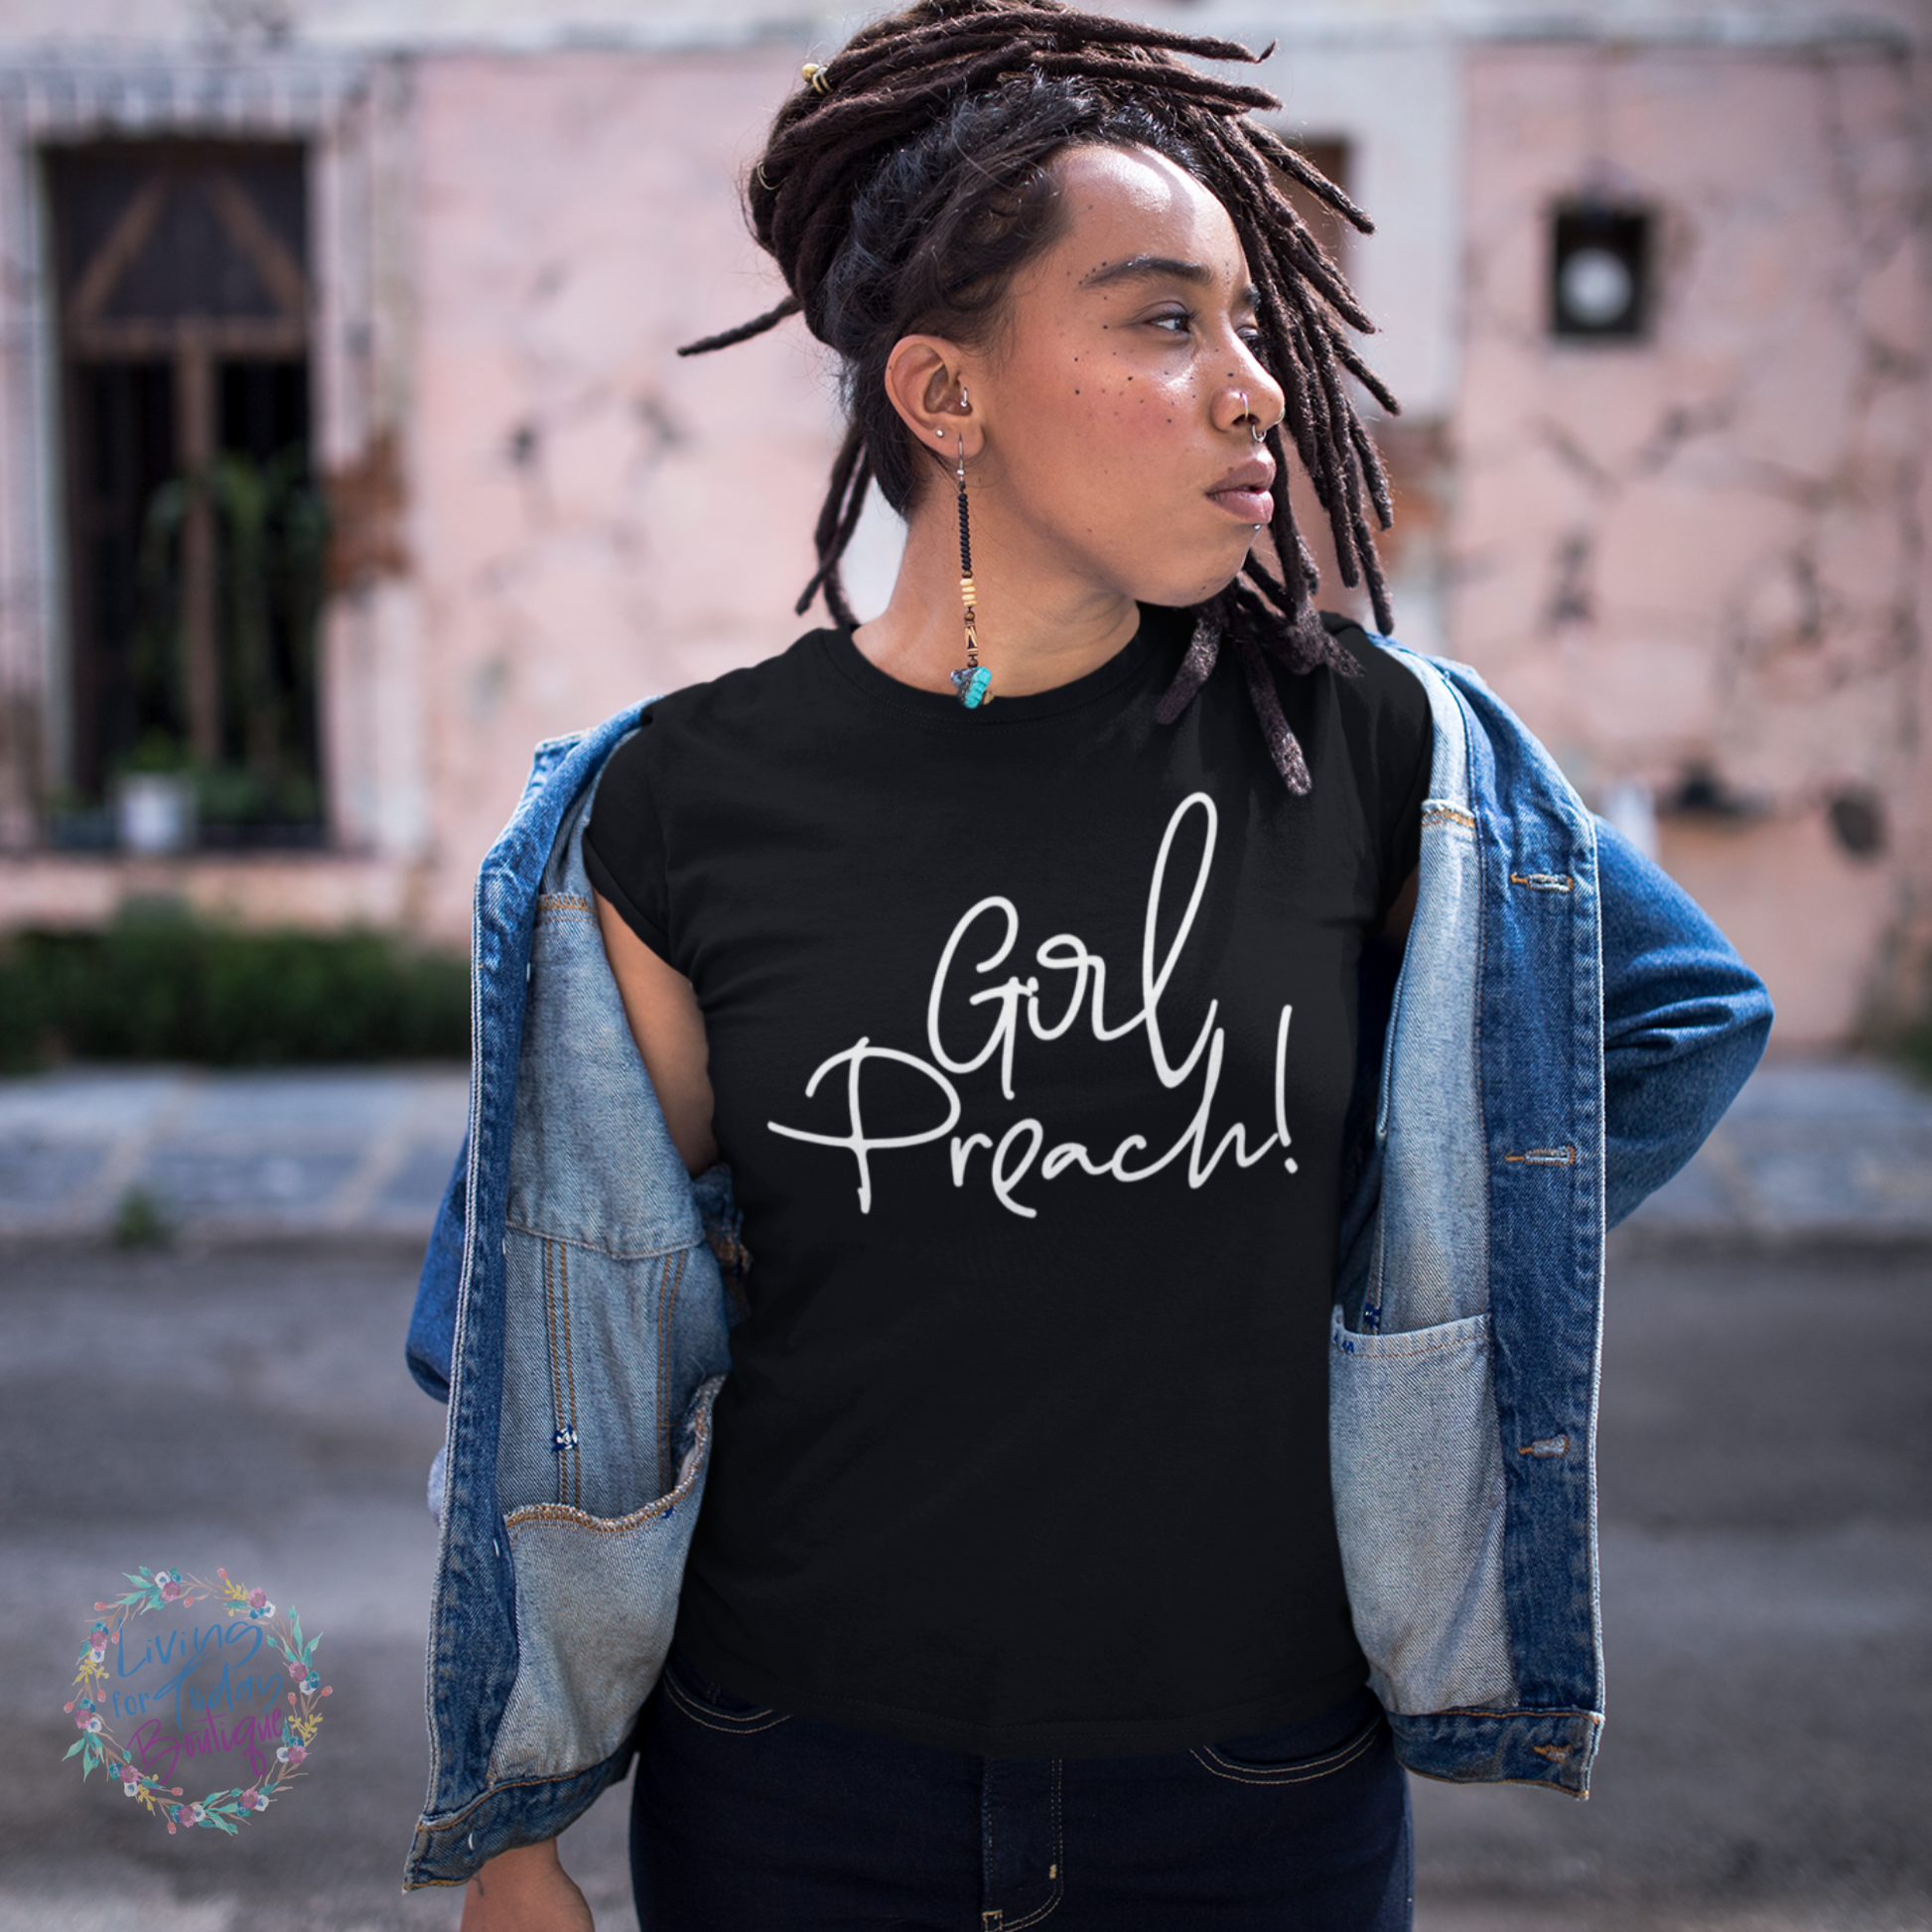 Girl Preach! Shirt